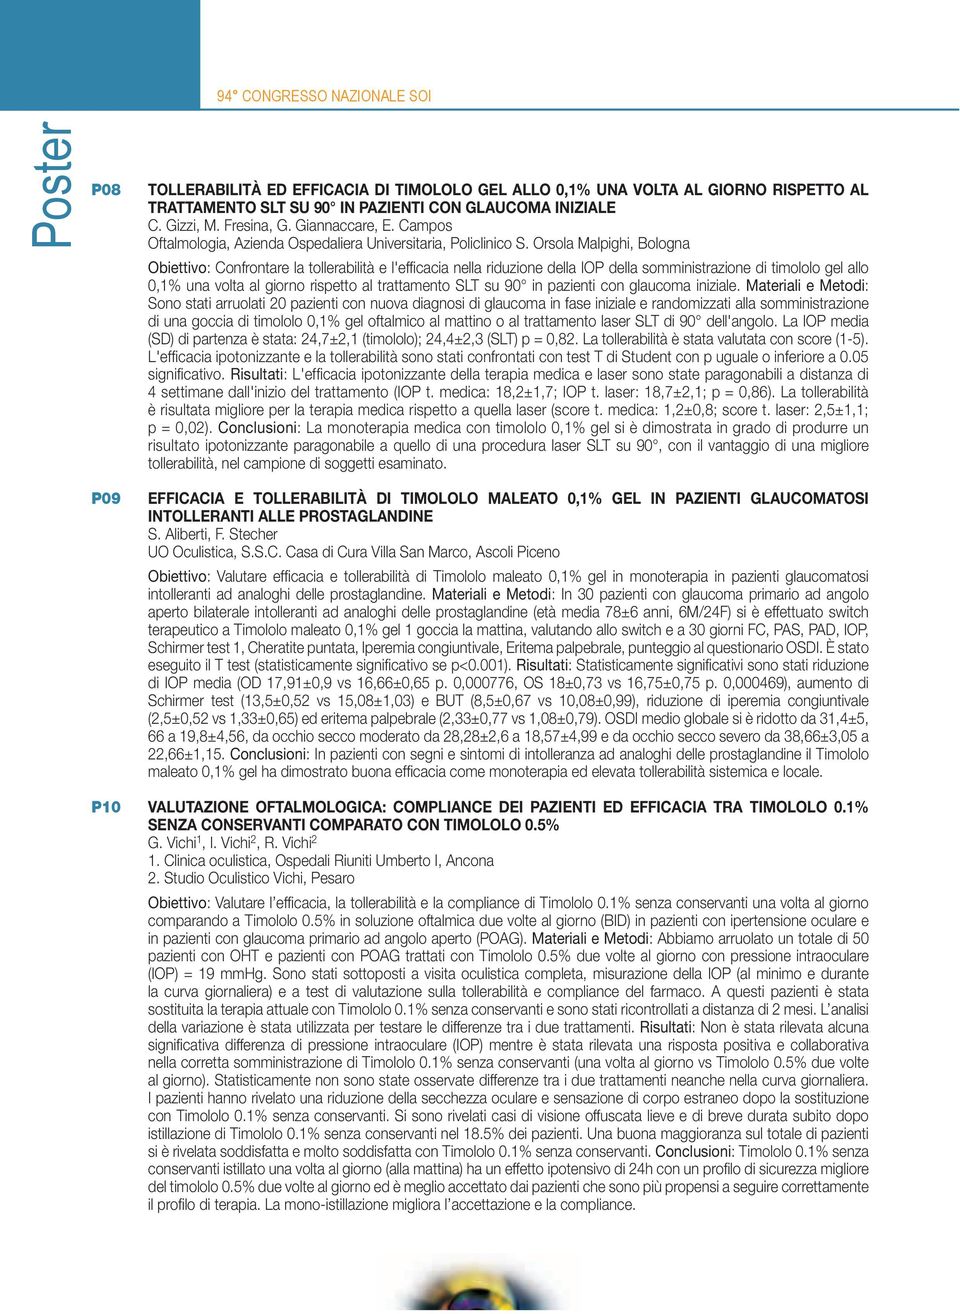 Orsola Malpighi, Bologna Obiettivo: Confrontare la tollerabilità e l'effi cacia nella riduzione della IOP della somministrazione di timololo gel allo 0,1% una volta al giorno rispetto al trattamento